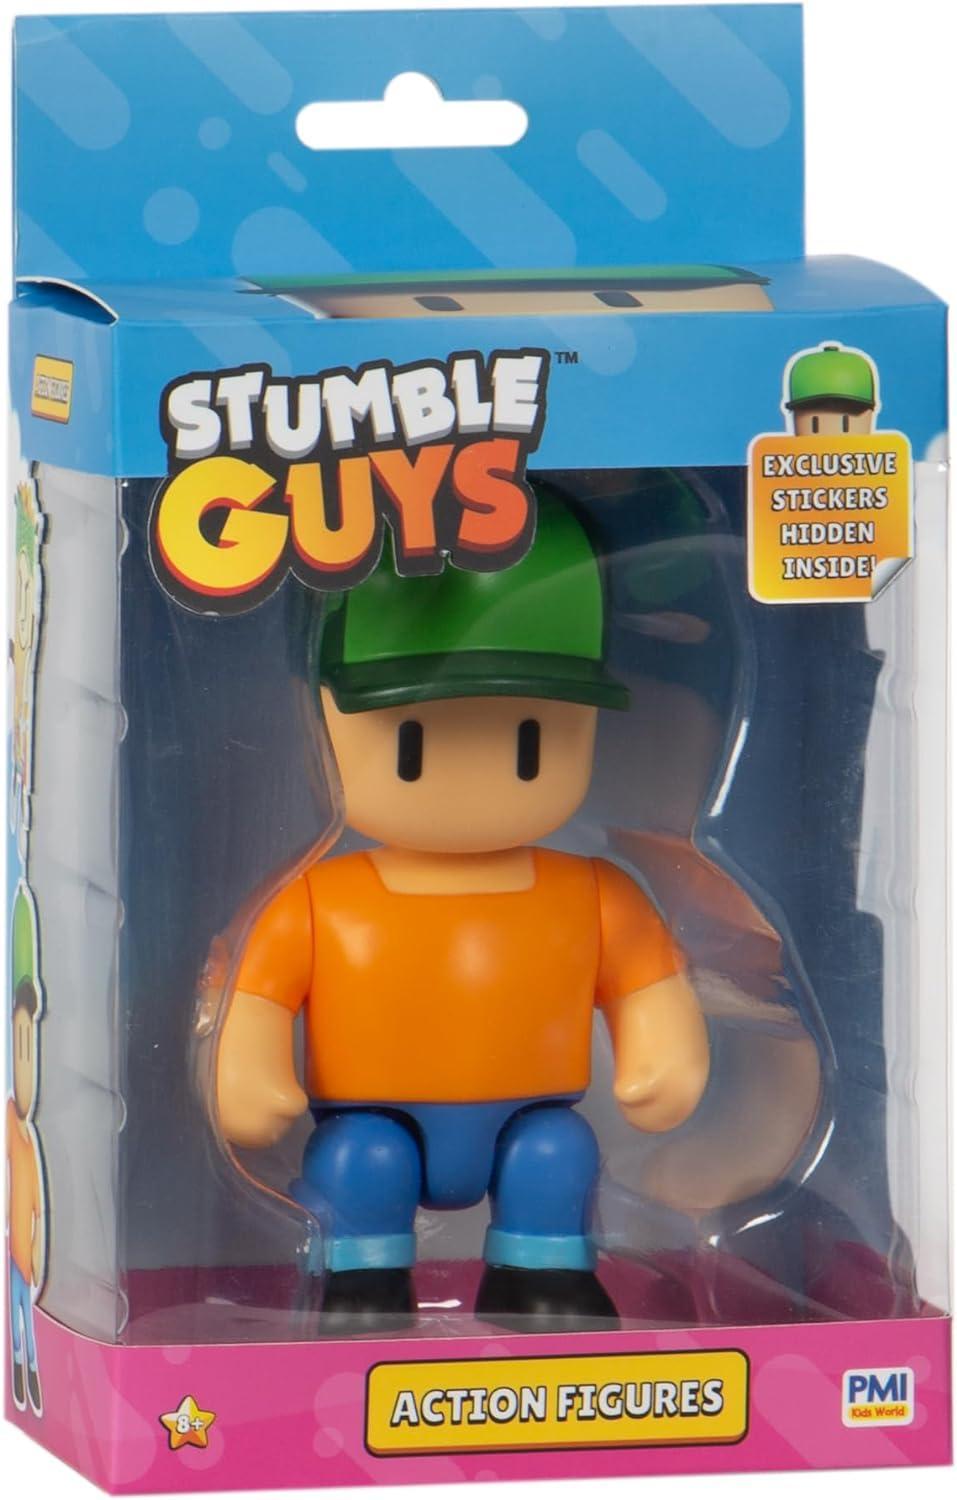 rocco giocattoli stumble guys personaggi cm11 ass.ti